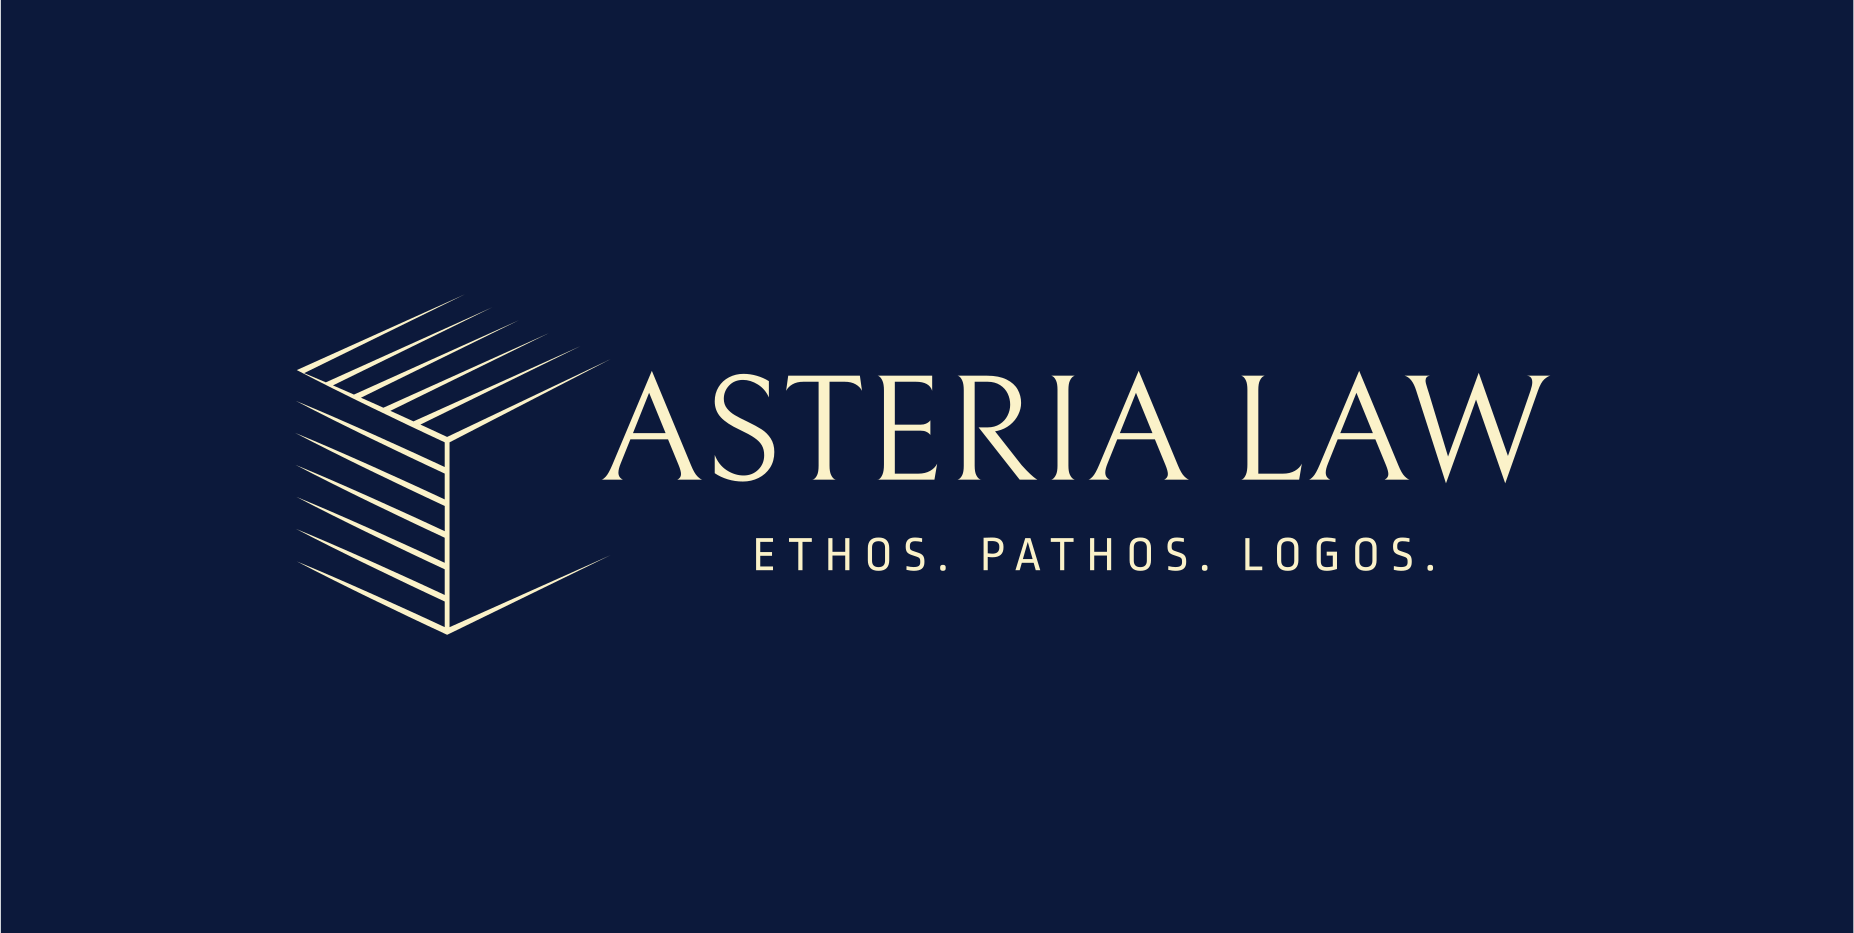 Asteria Law